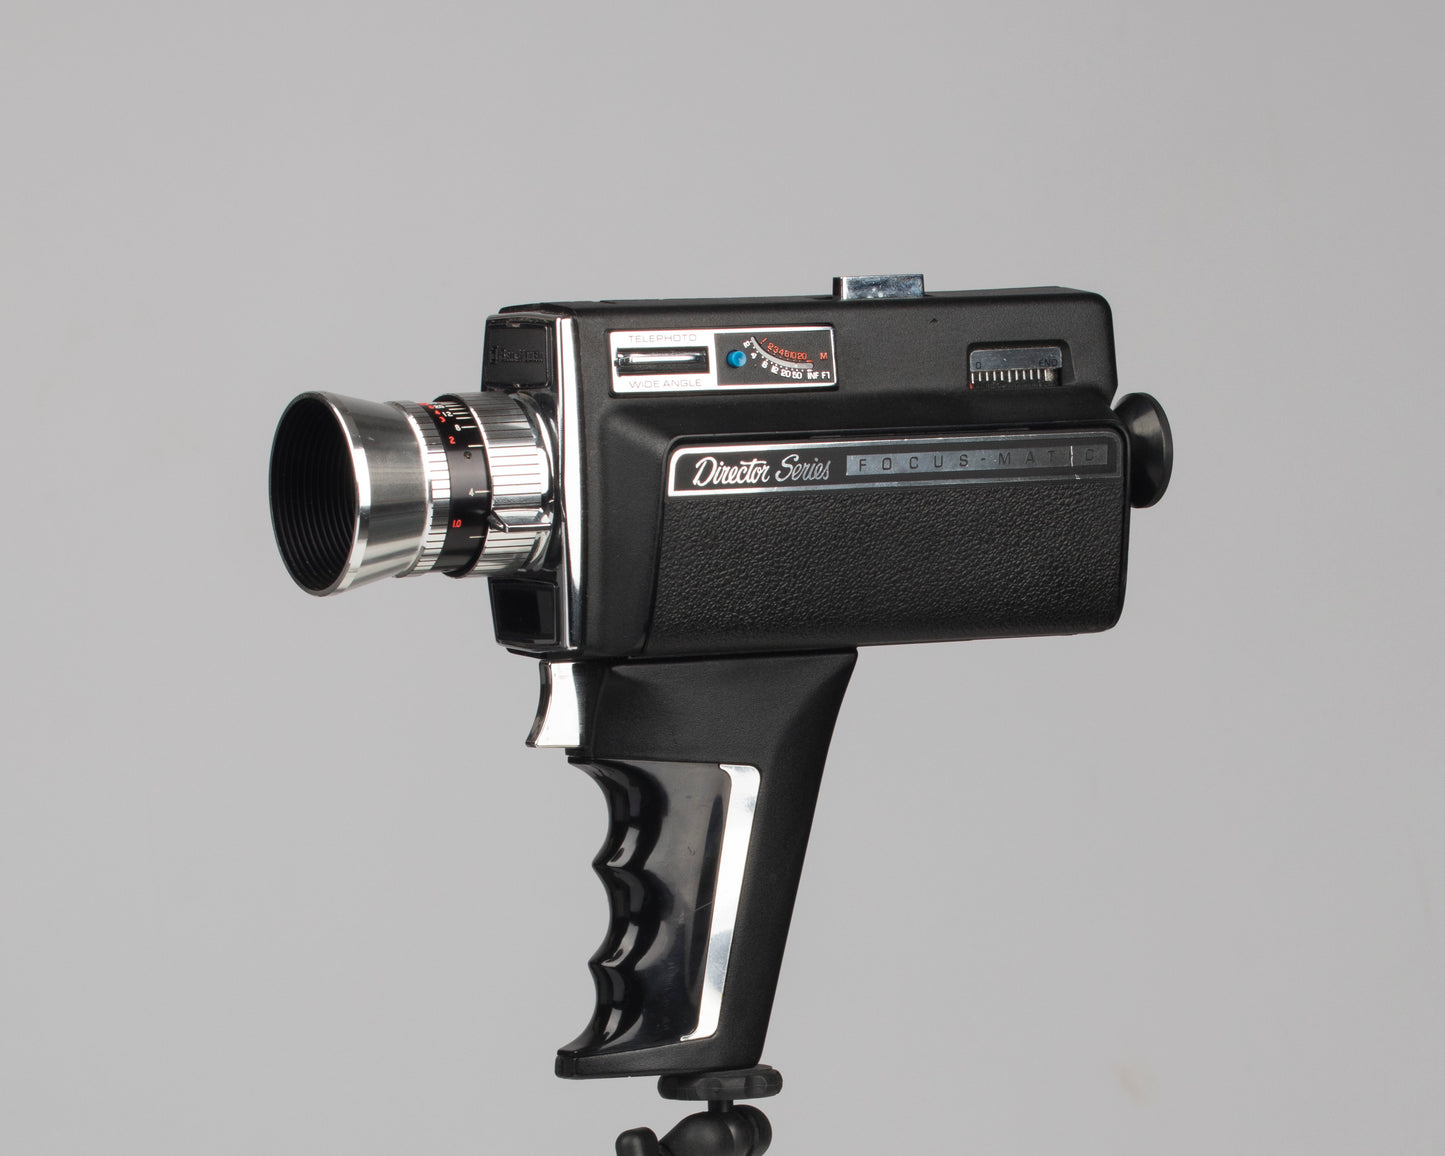 Caméra Bell et Howell 1206 Director Series Super 8